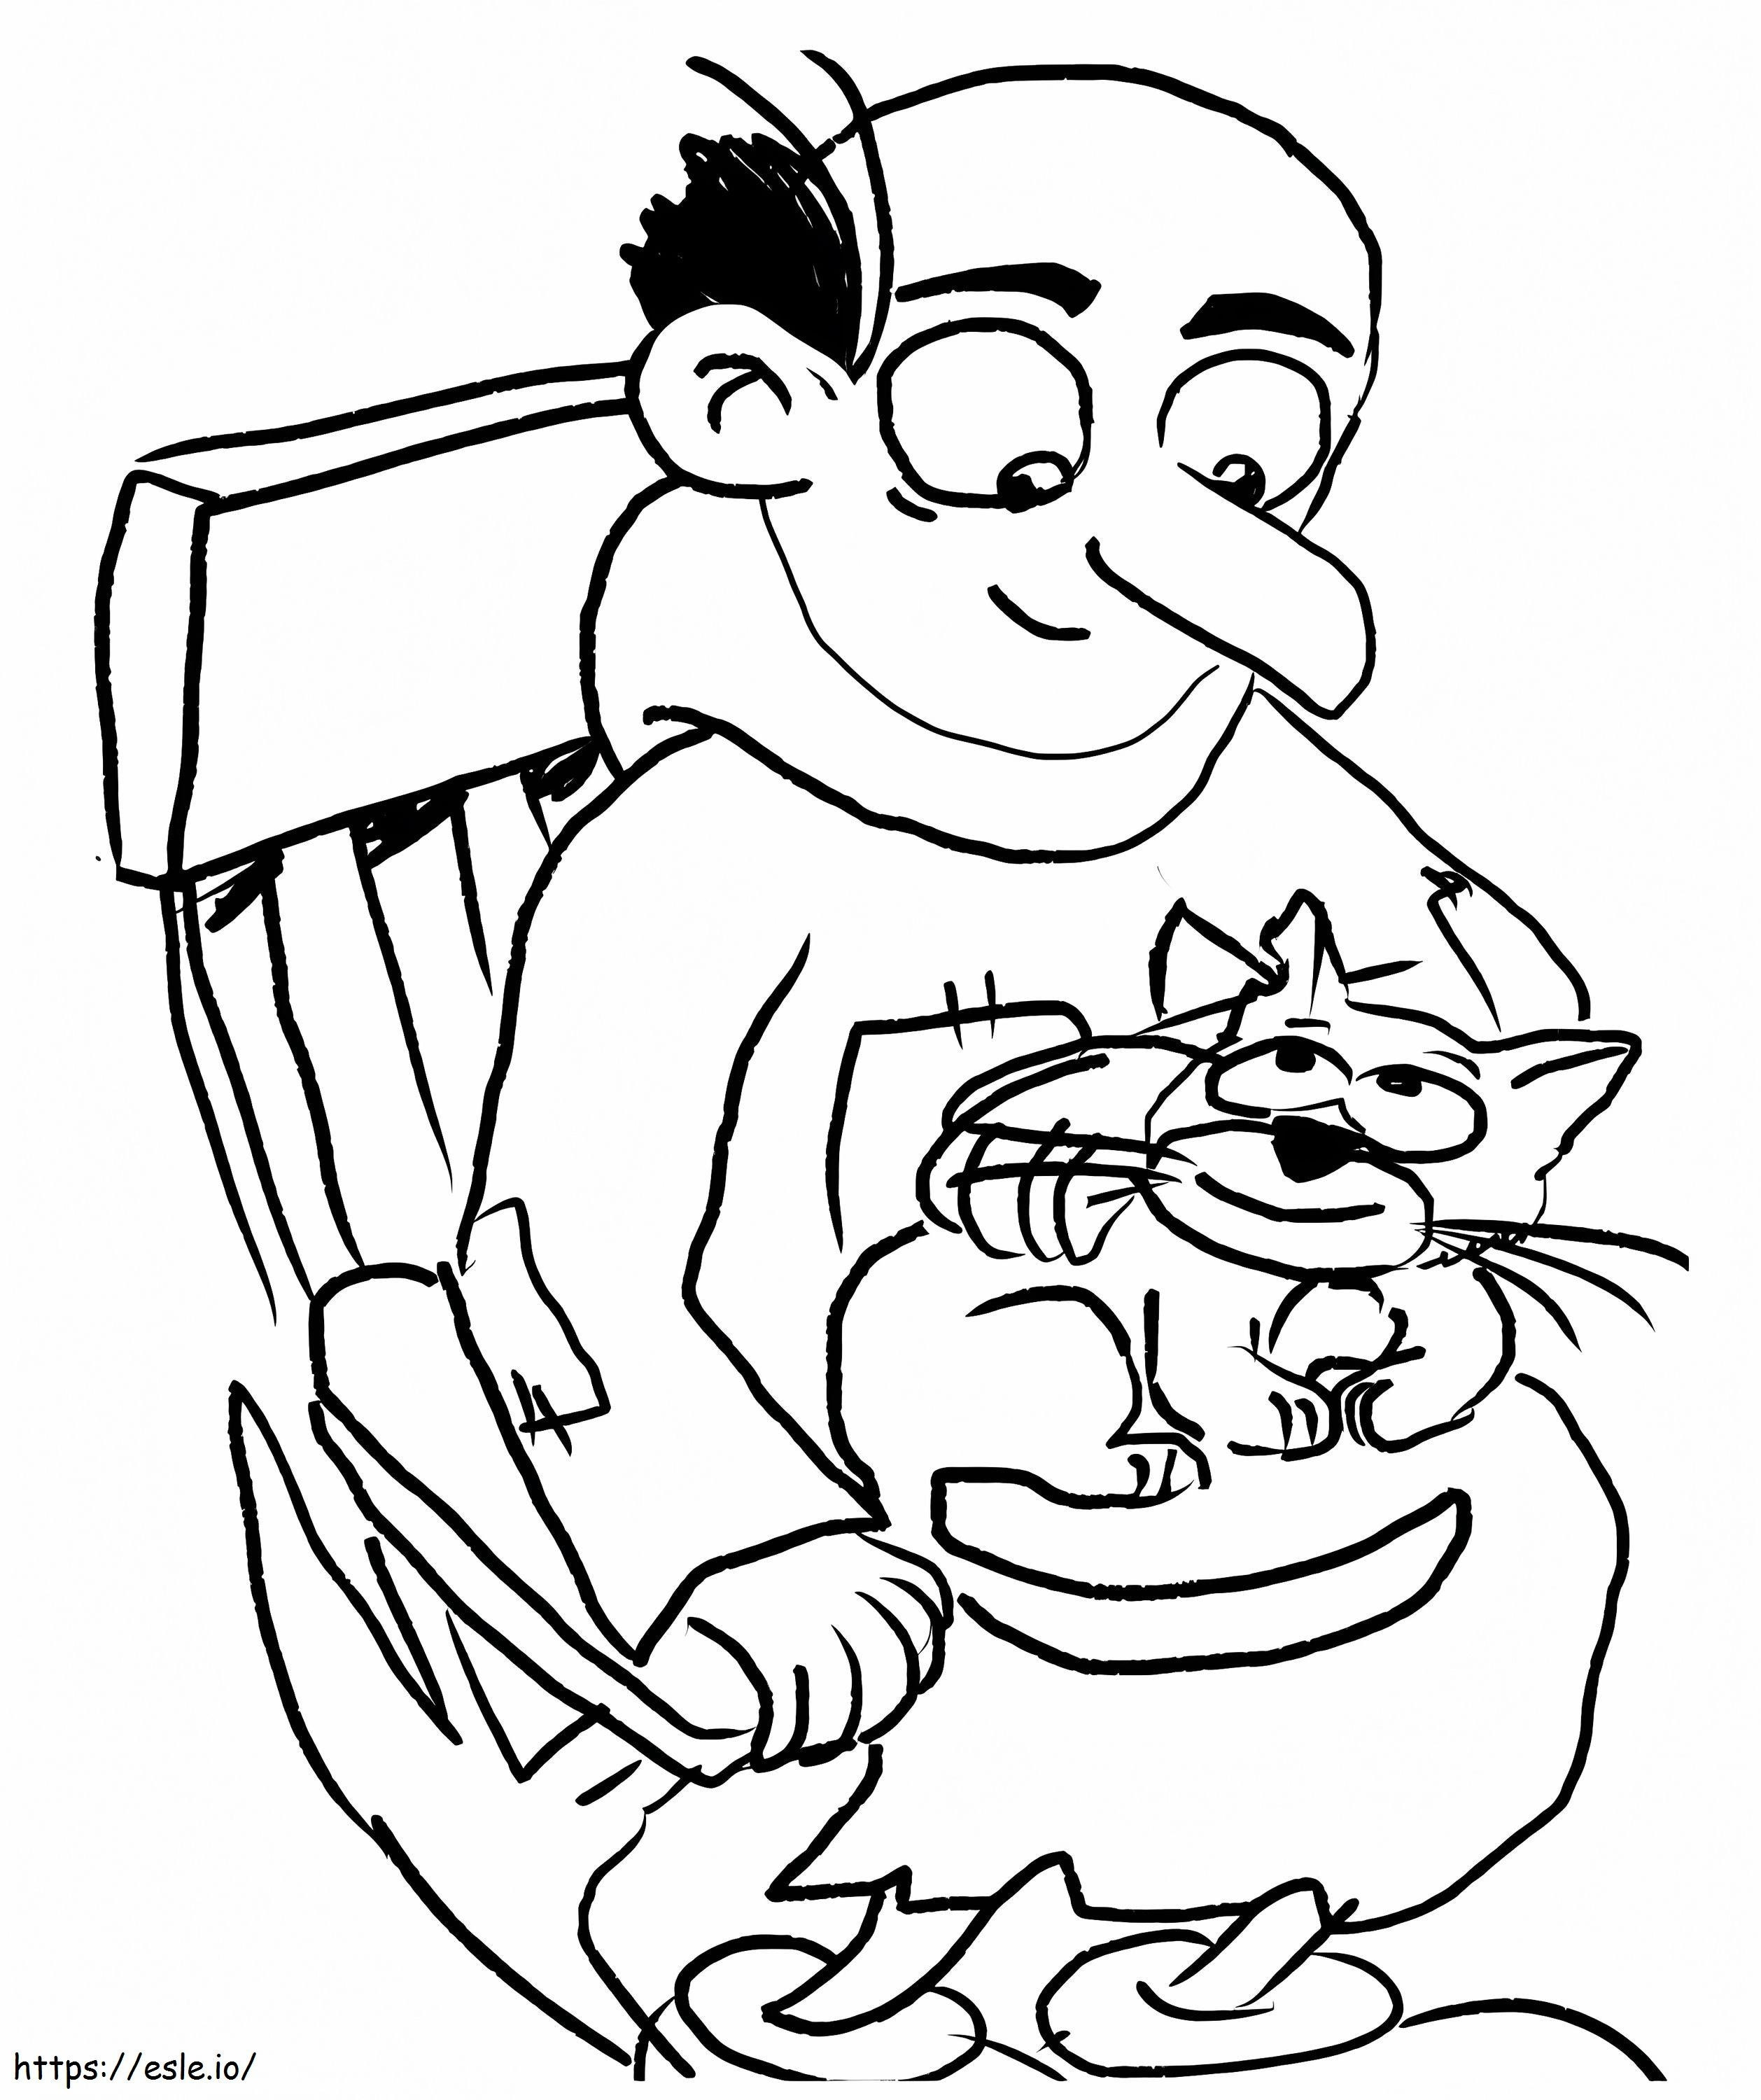 Gargamel cu pisica lui de colorat